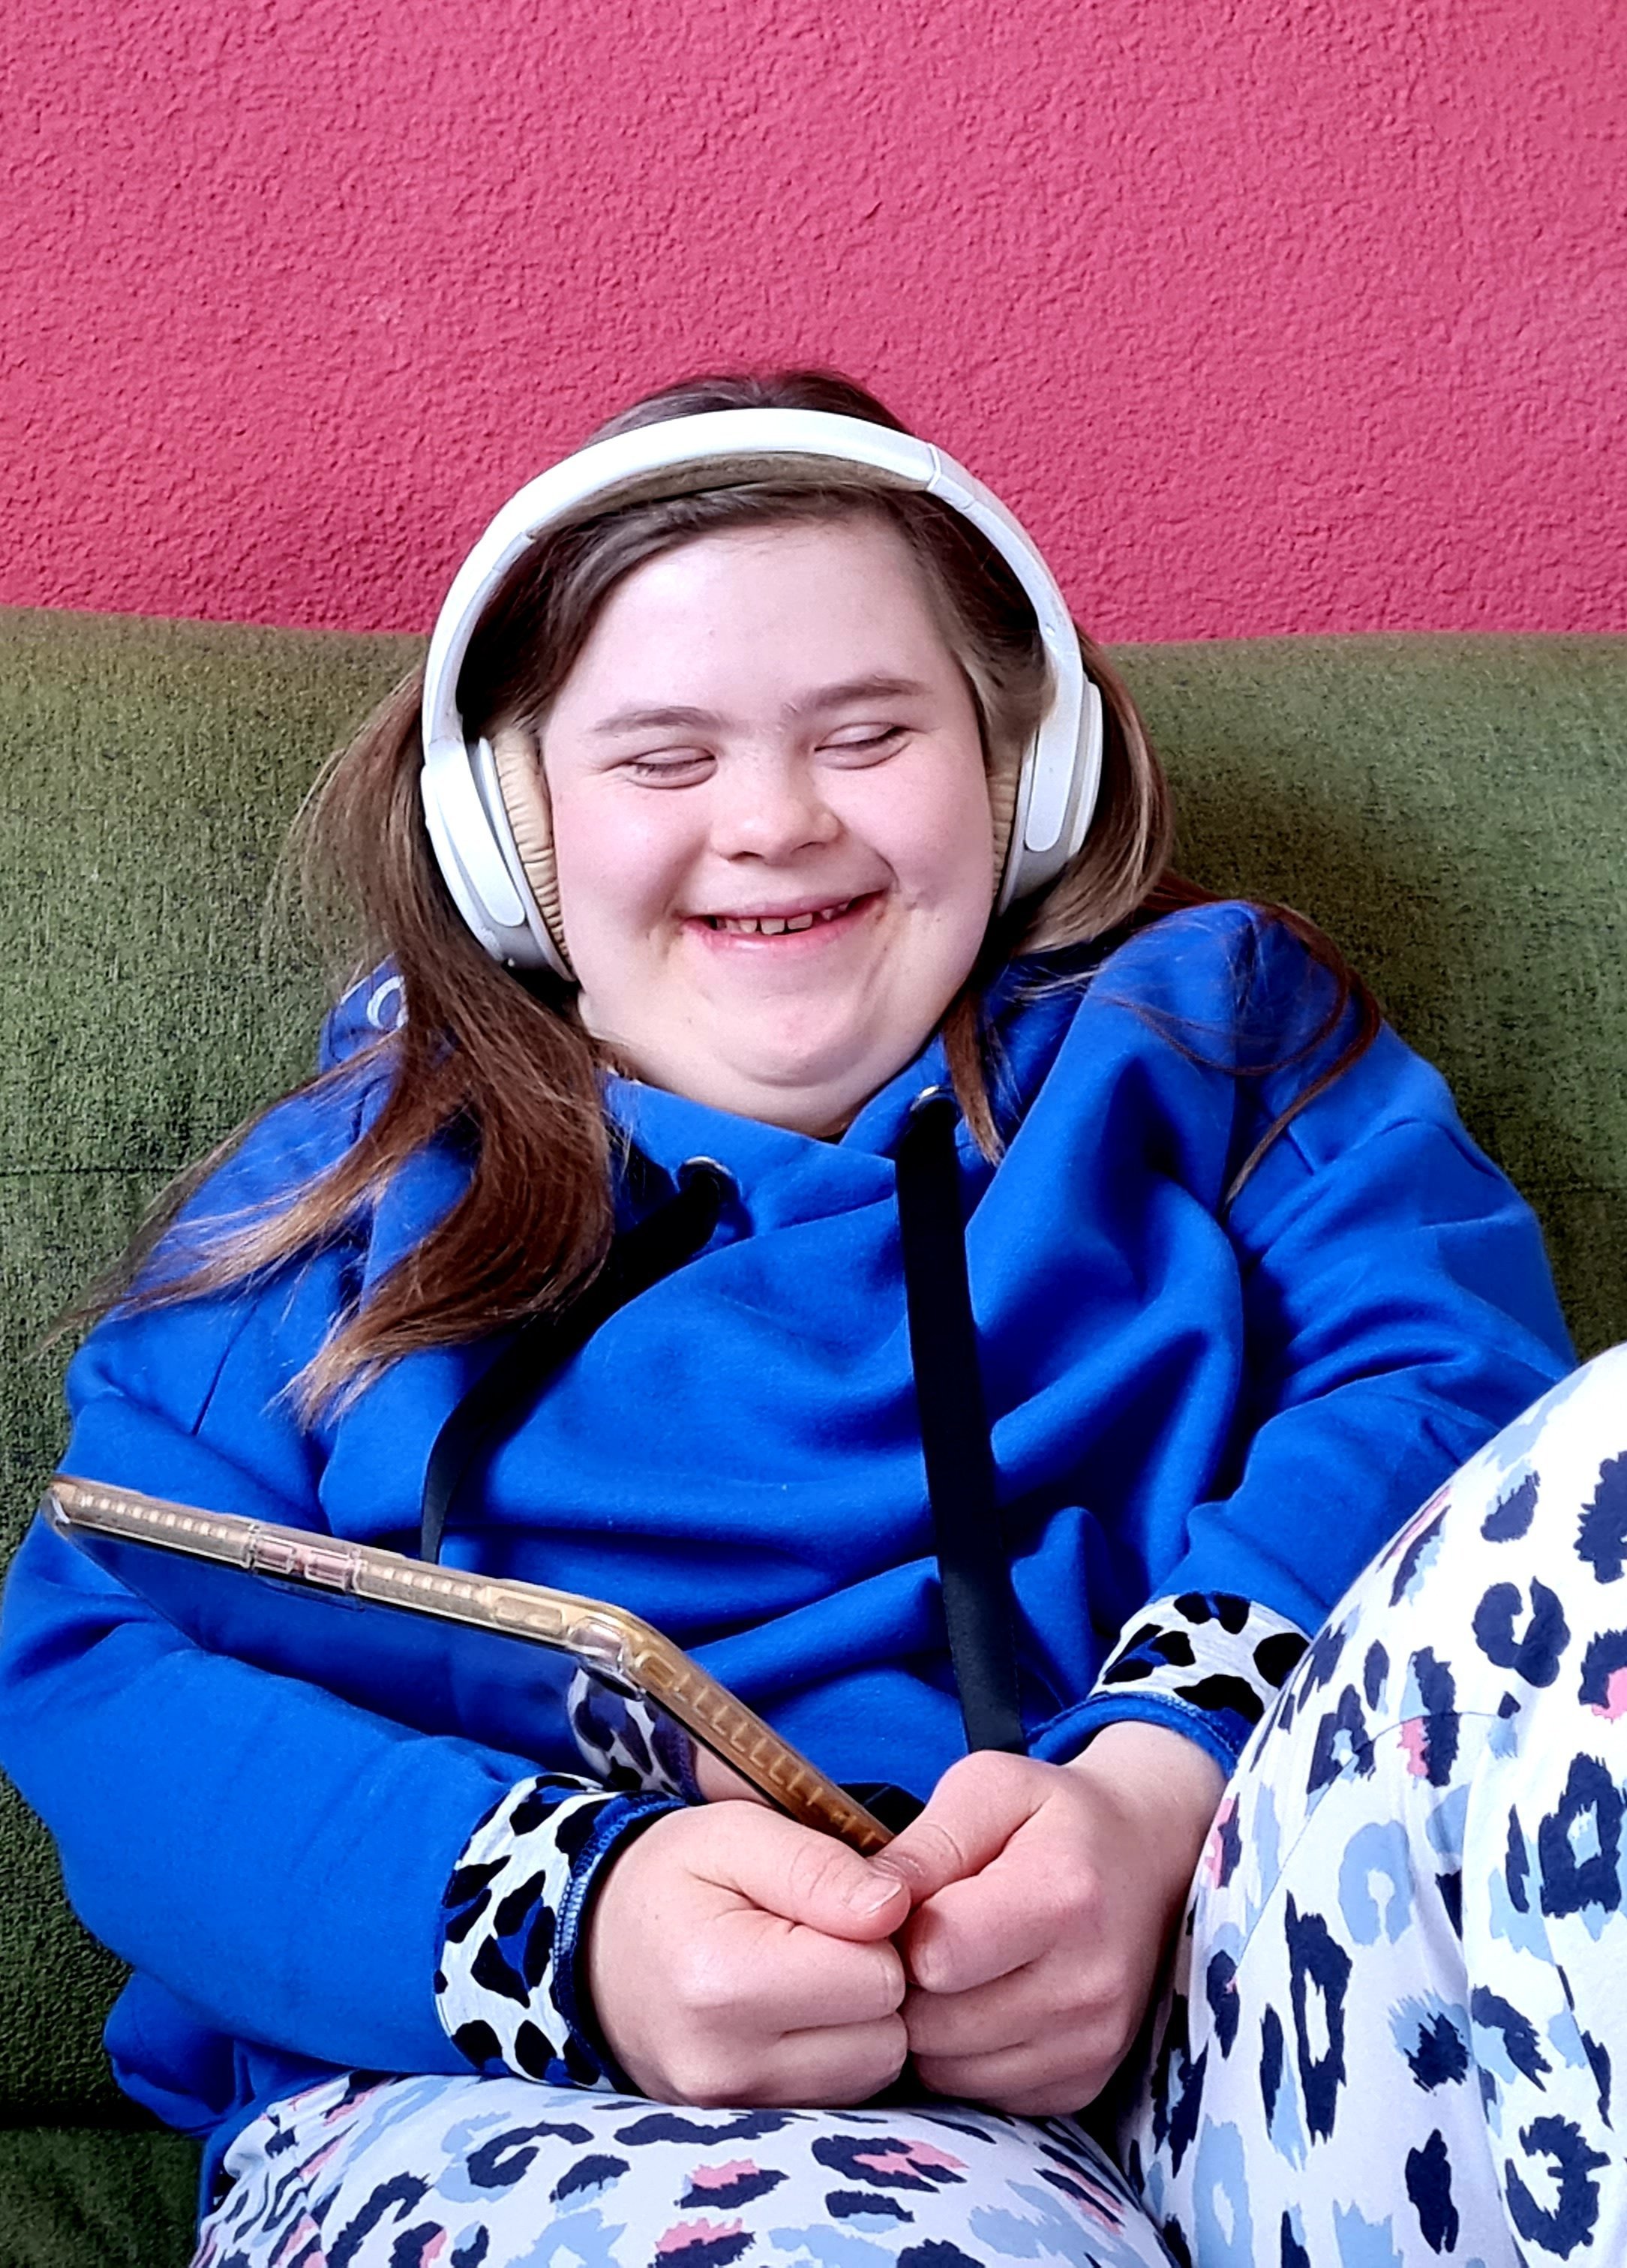 Podcast in Leichter Sprache - Eine junge Frau mit weißen Kopfhörern sitz auf einer grünen Couch. Sie hat ein Tablet in der Hand. Die Augen sind geschlossen und sie lacht fröhlich.